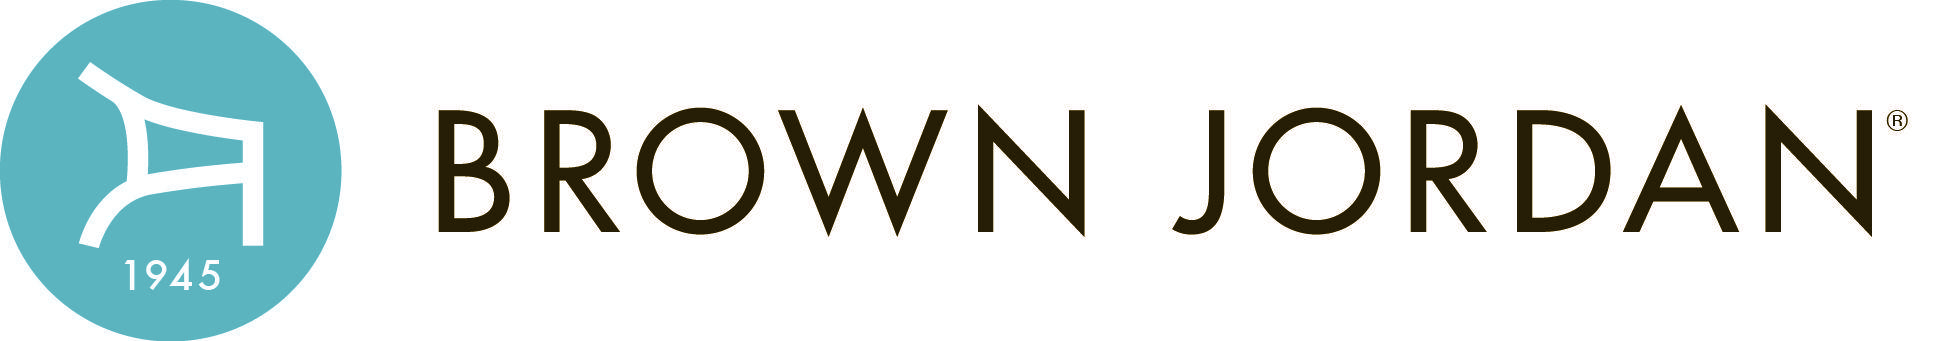 Brown Jordan Logo - Brown Jordan | Design Leadership Network